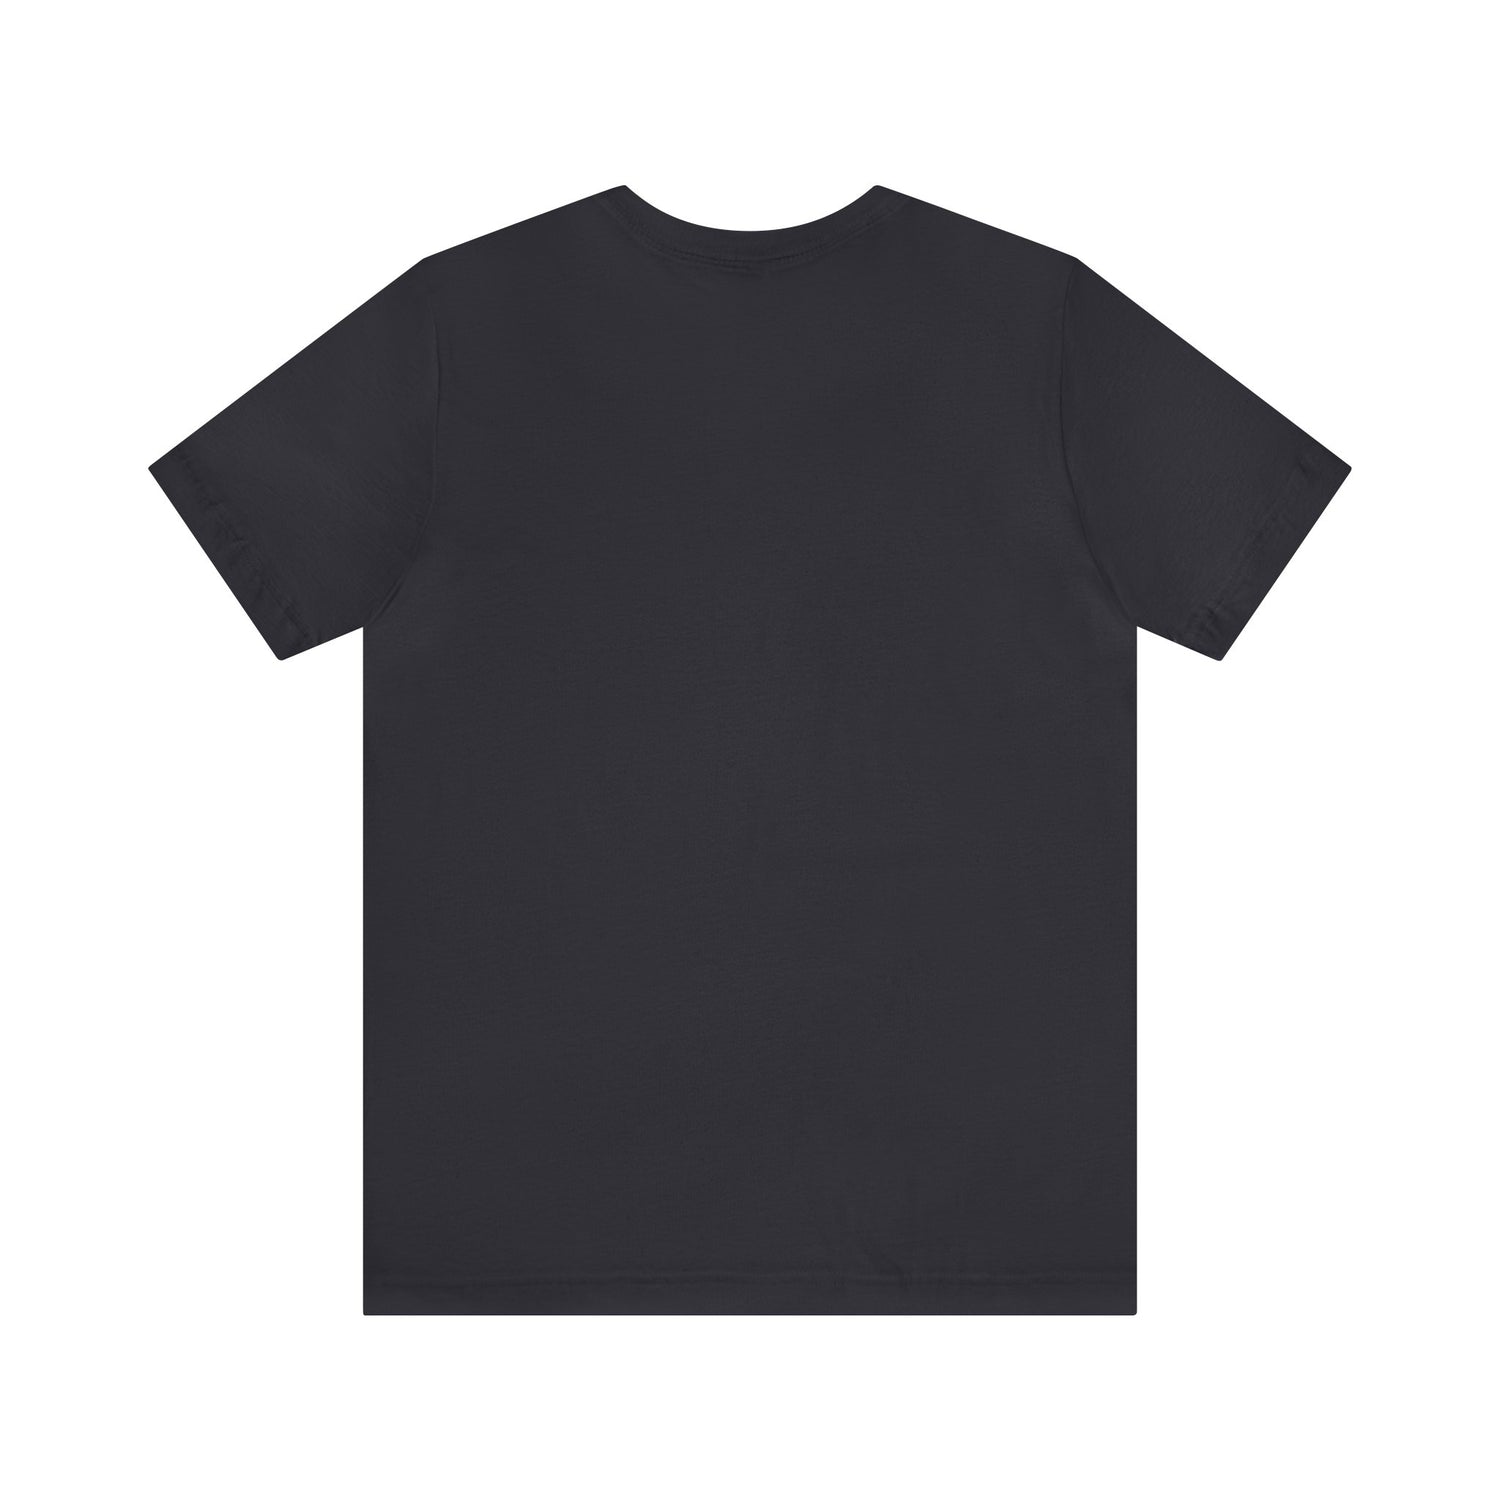 Grandchildren T-Shirt | For Grandchild T-Shirt Petrova Designs